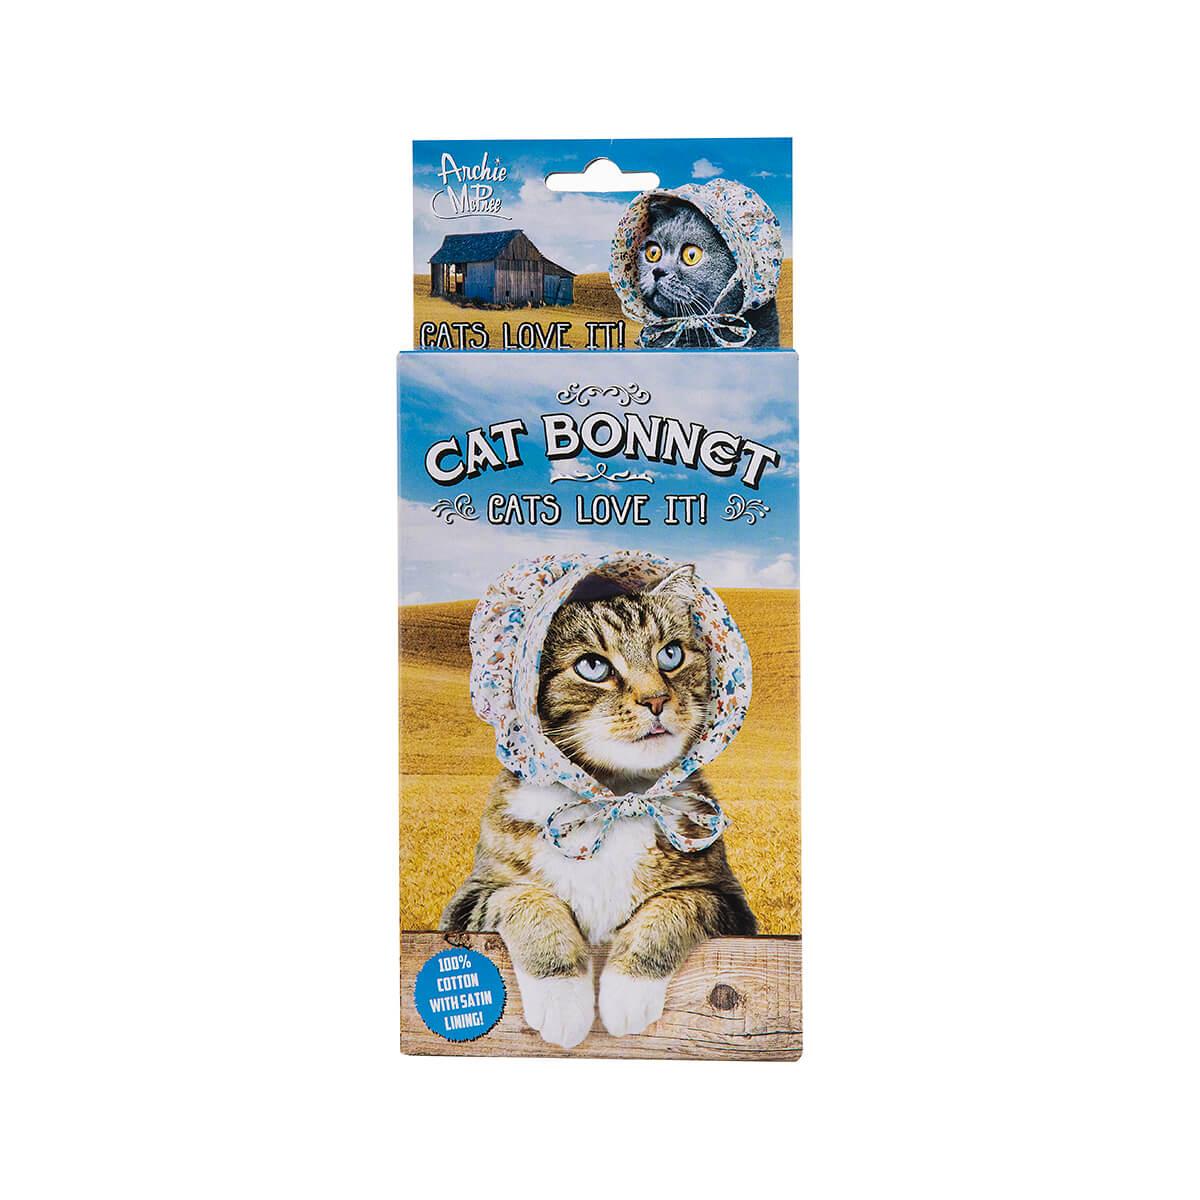  Cat Bonnet